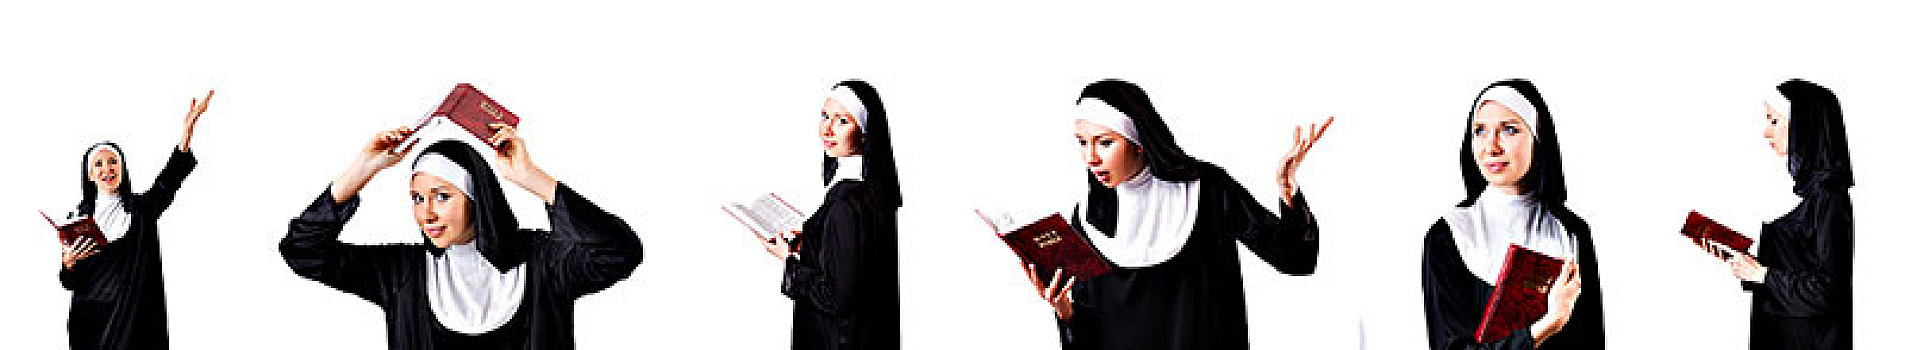 漂亮,修女,圣经,隔绝,白色背景